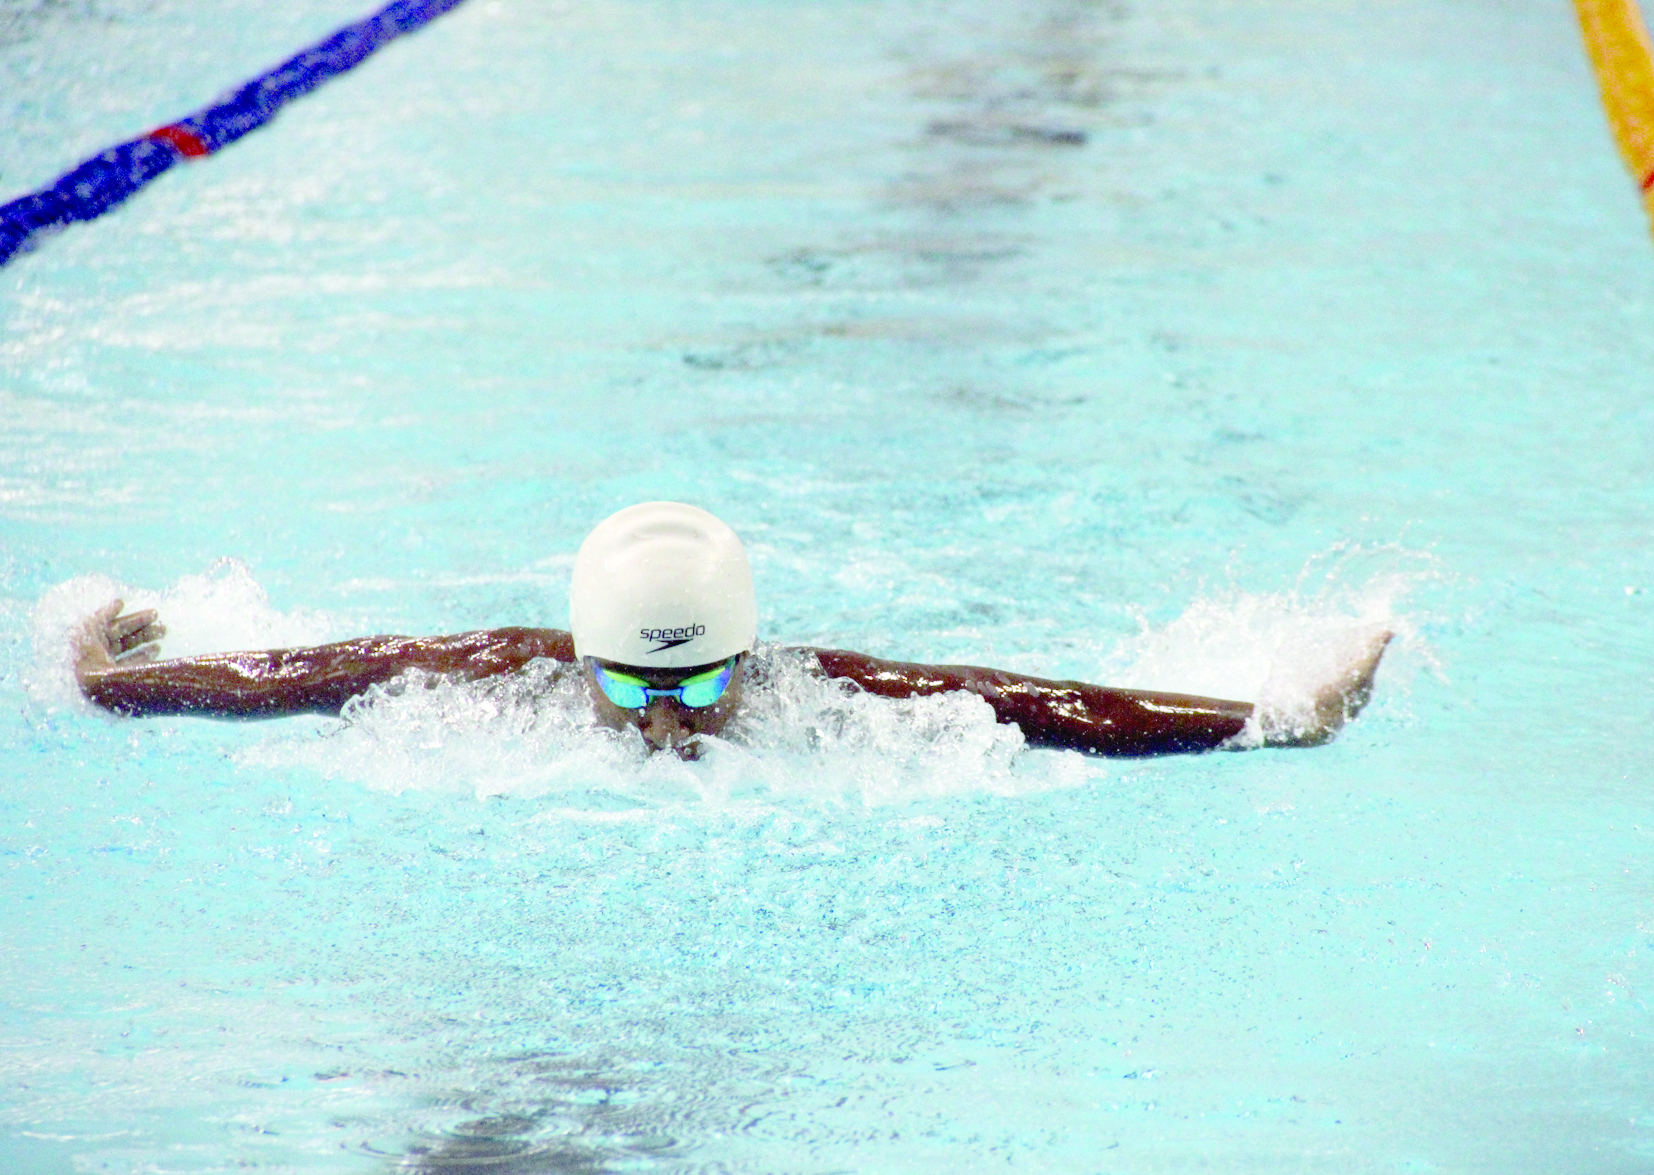 في البطولة الخليجية للسباحة القصيرة بالدمام

منتخبنا لفئة العموم يحتل المركز الثالث برصيد 8 ميداليات ملونة